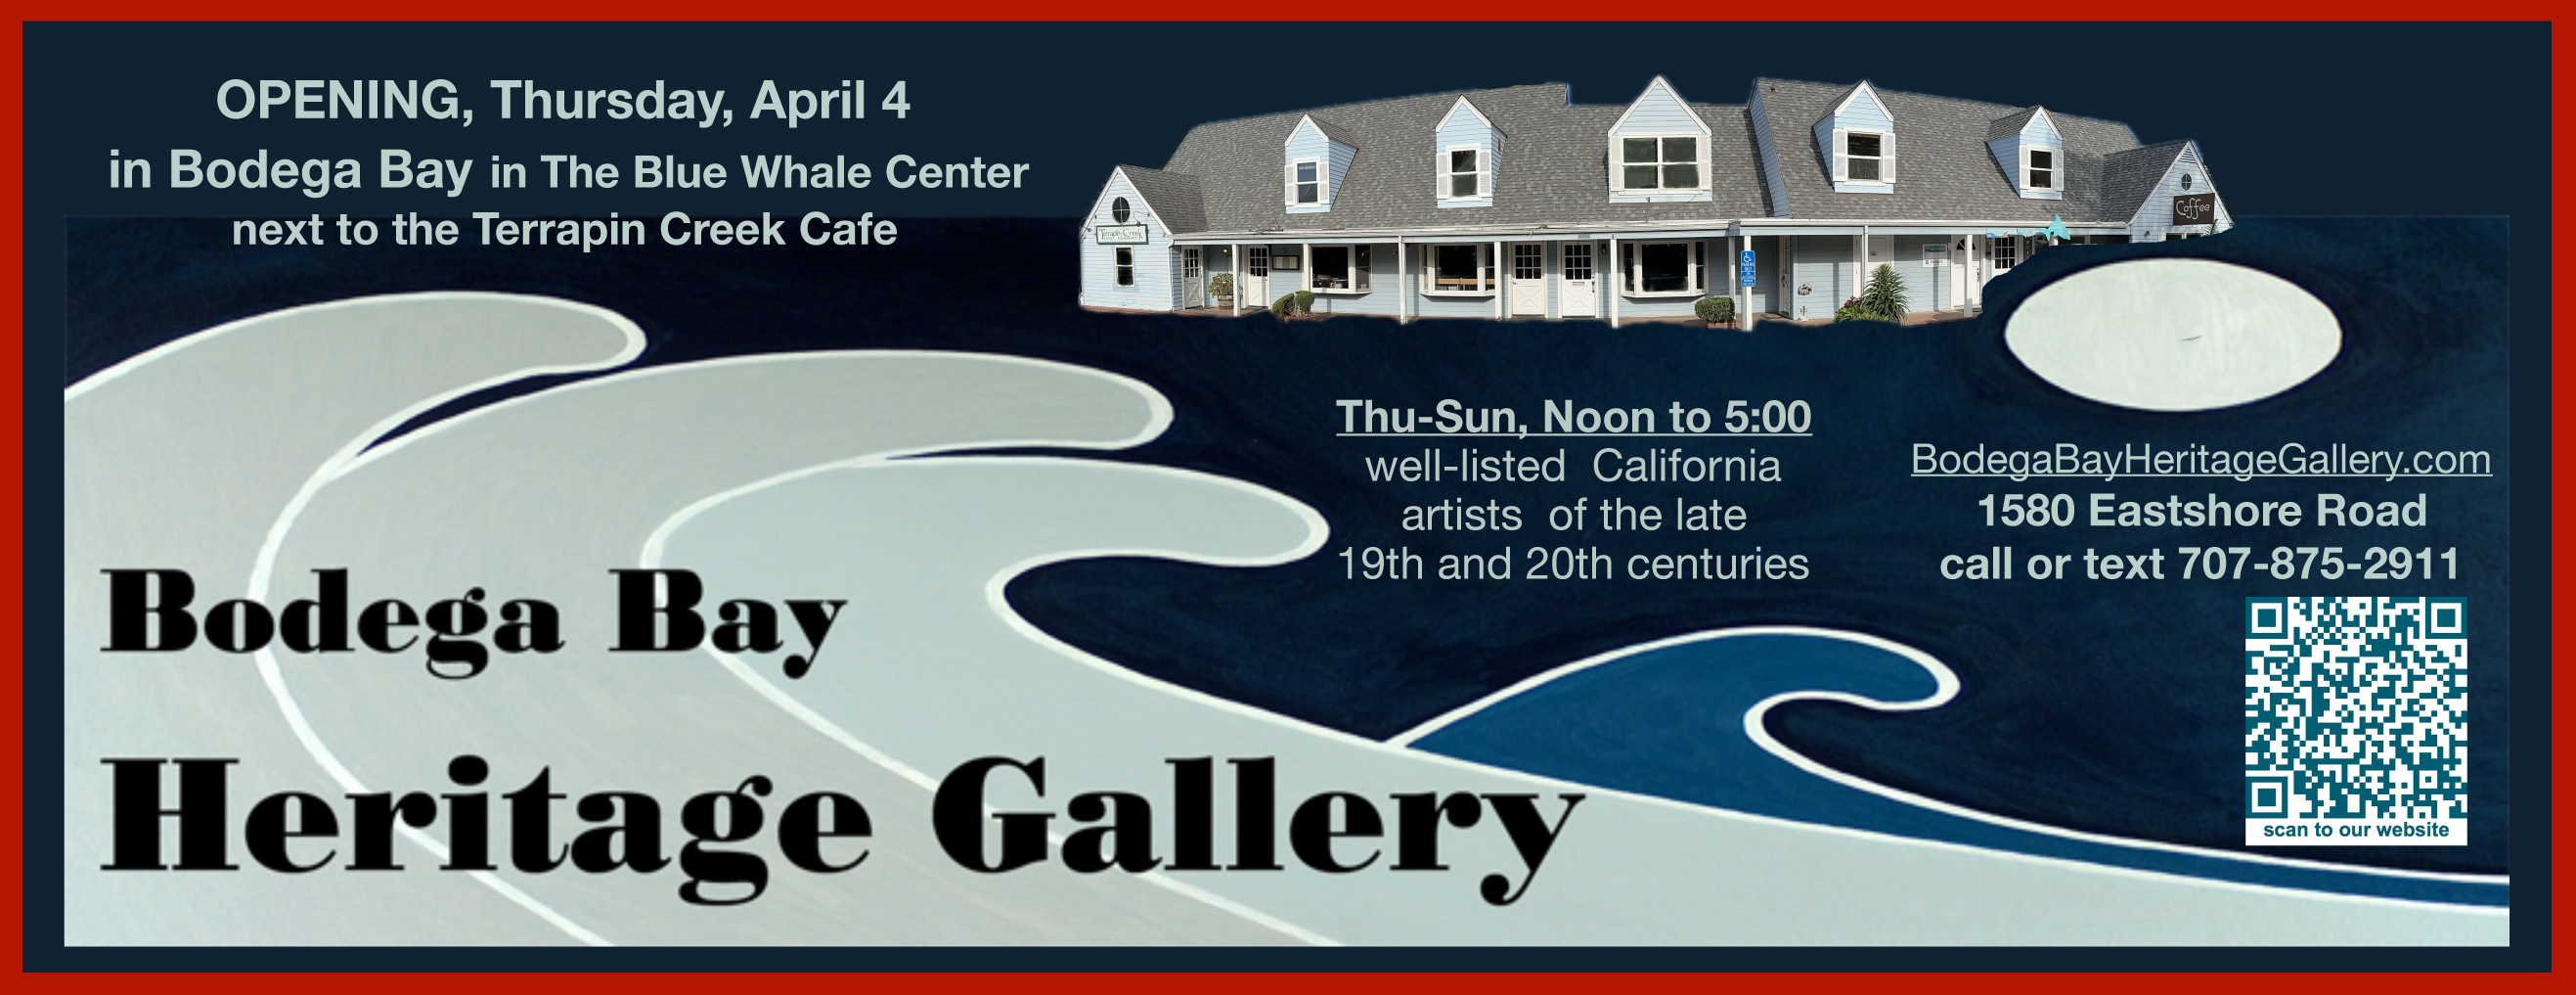 Bodega Bay Heritage Gallery Newsletter Header